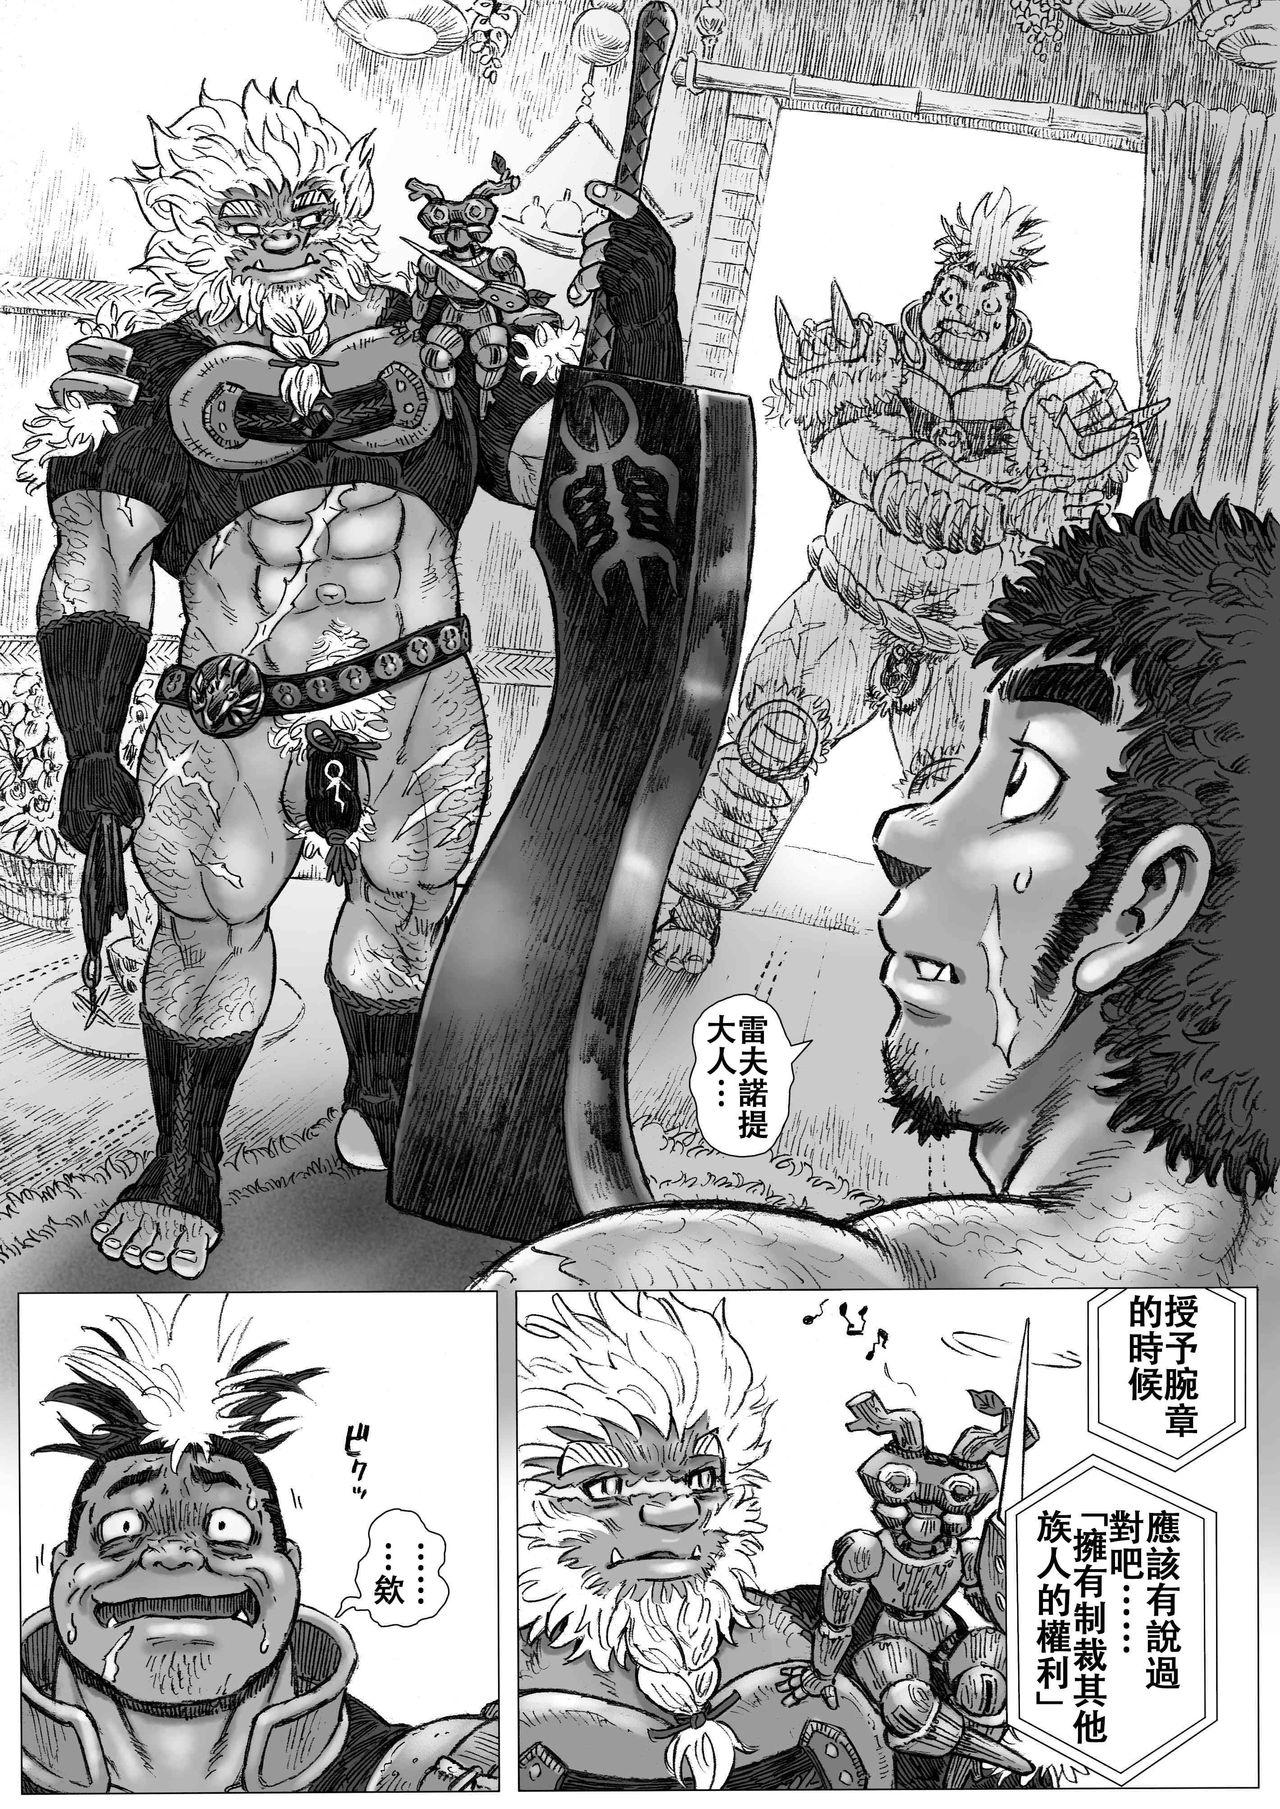 Ink Hepoe no Kuni kara 16 - Original Big Ass - Page 6